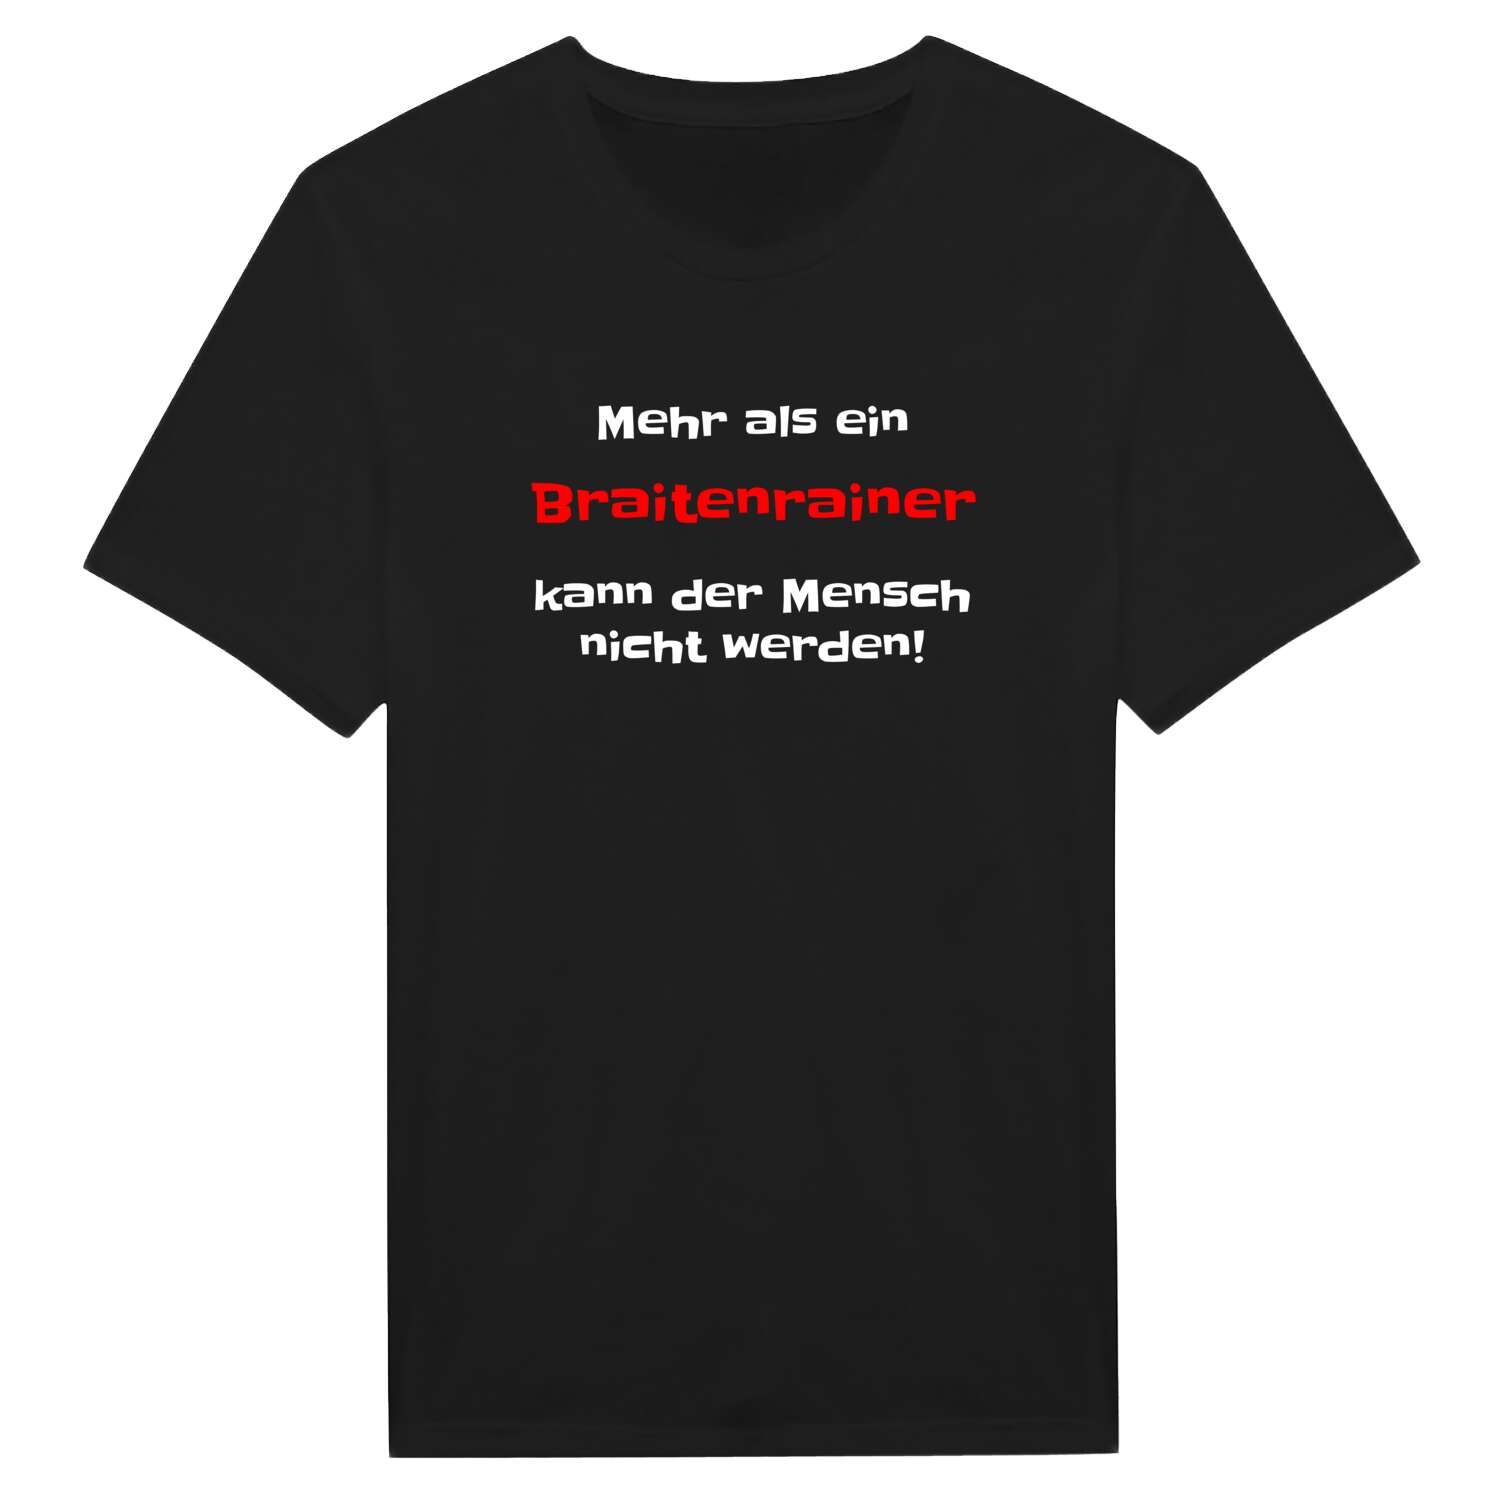 Braitenrain T-Shirt »Mehr als ein«